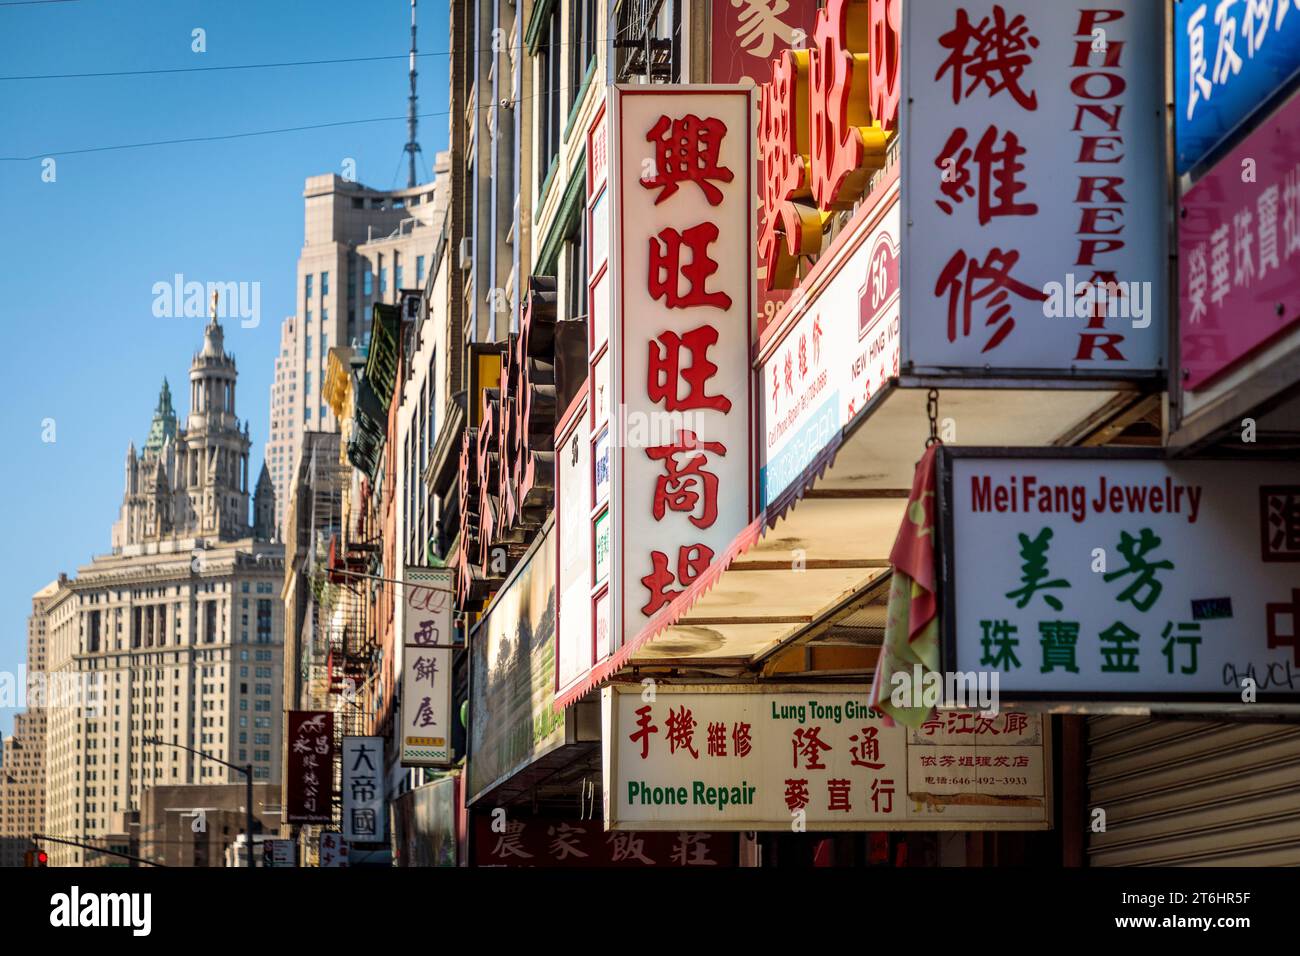 Facciate con pubblicità cinese, Chinatown, New York City, Nord America, Stati Uniti, USA Foto Stock